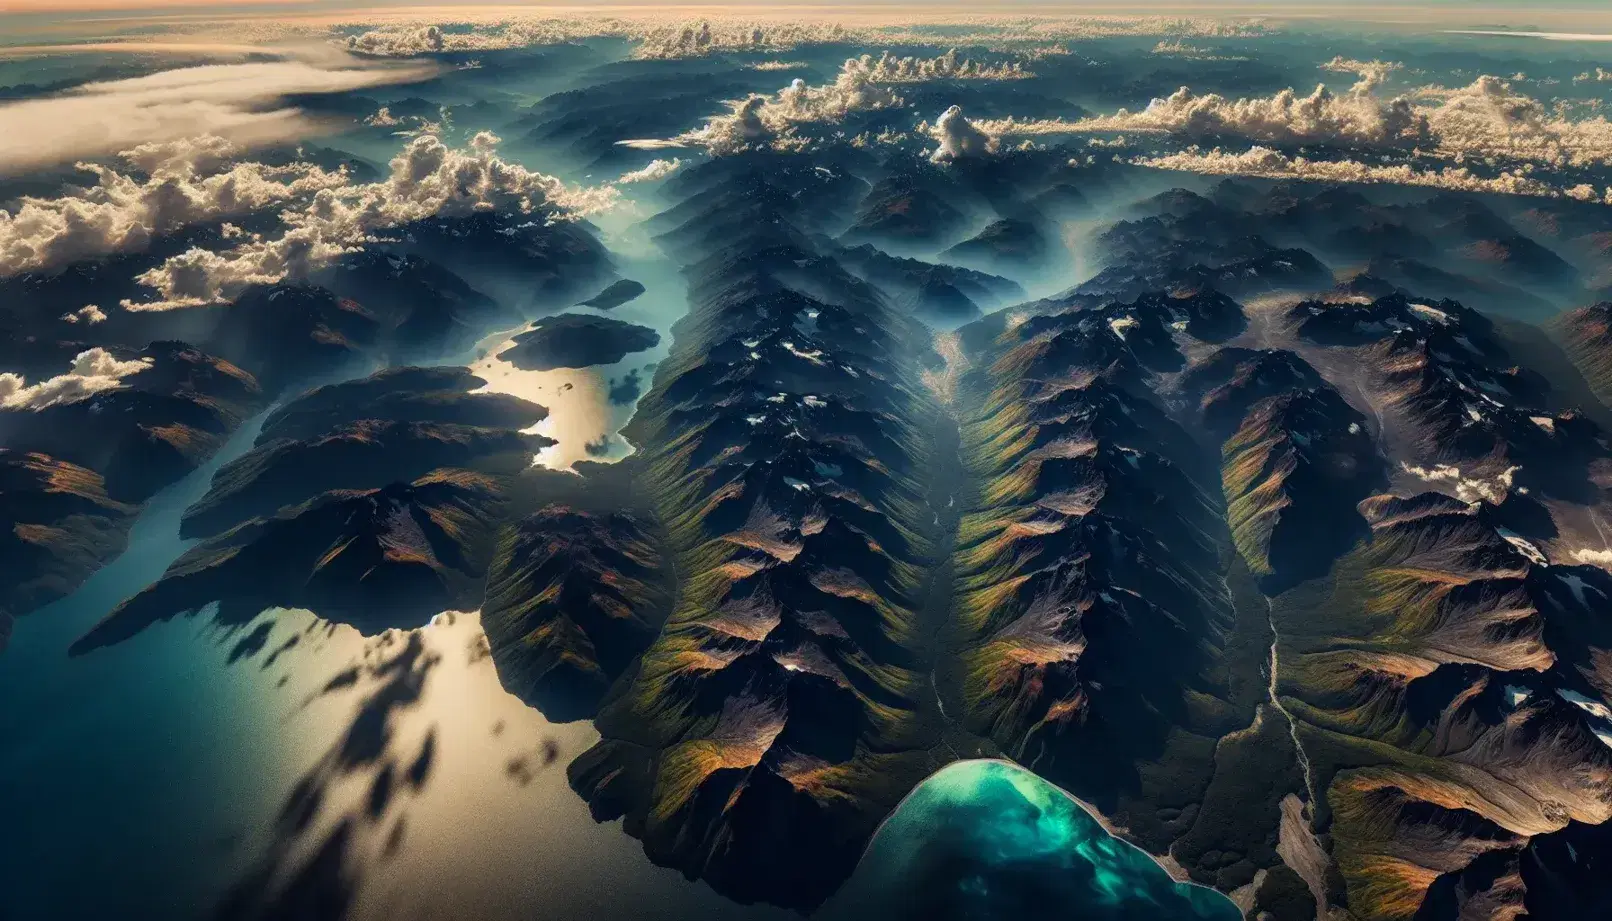 Vista aérea de una cadena montañosa con vegetación y rocas expuestas, valles verdes y un cuerpo de agua brillante bajo un cielo parcialmente nublado.